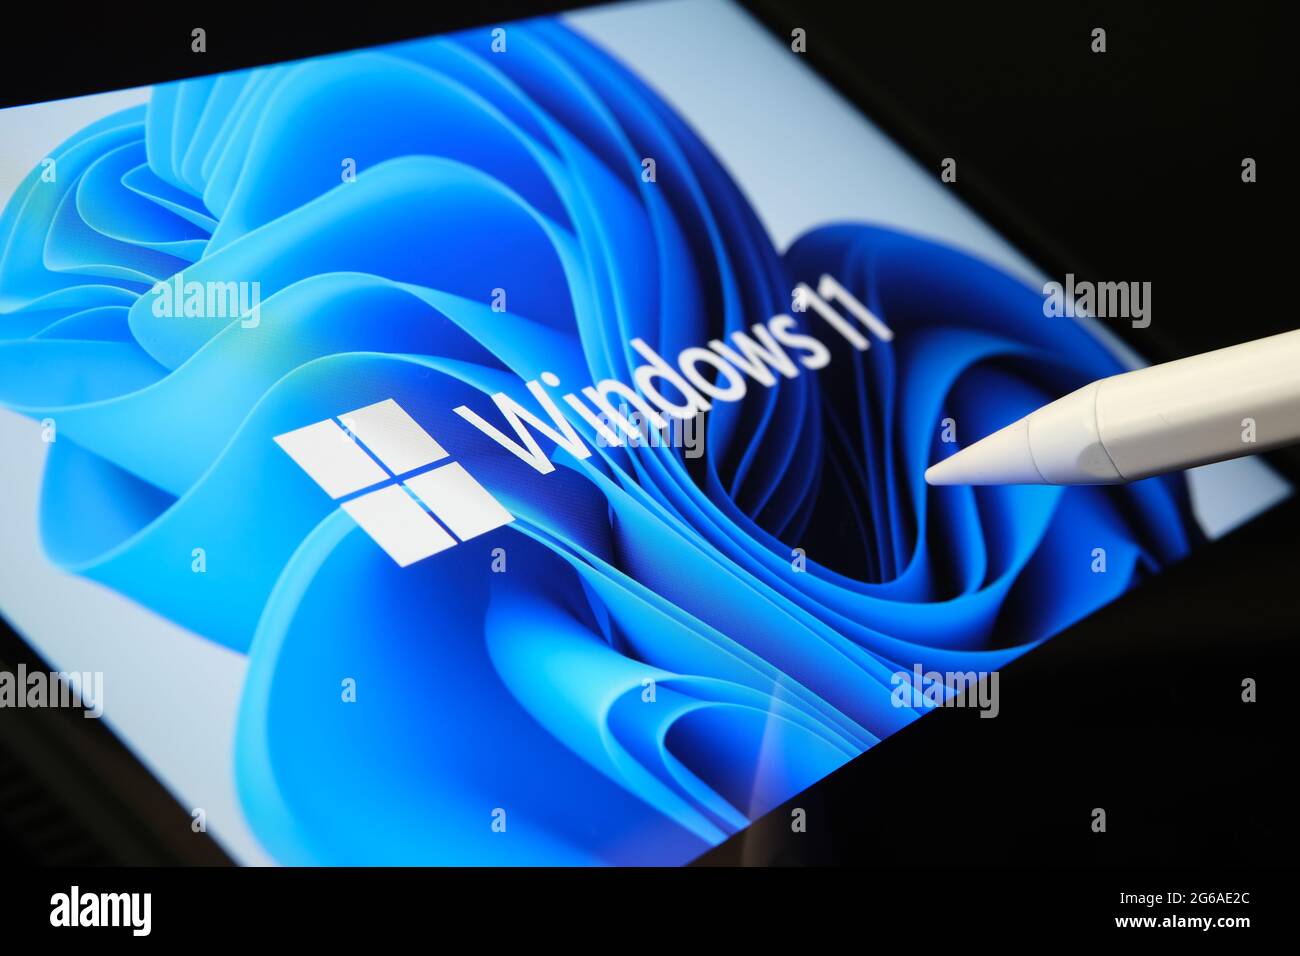 Il logo di Windows 11 viene visualizzato sullo schermo del tablet e l'utente lo punta con lo stilo. Stafford, Regno Unito, 1 luglio 2021 Foto Stock